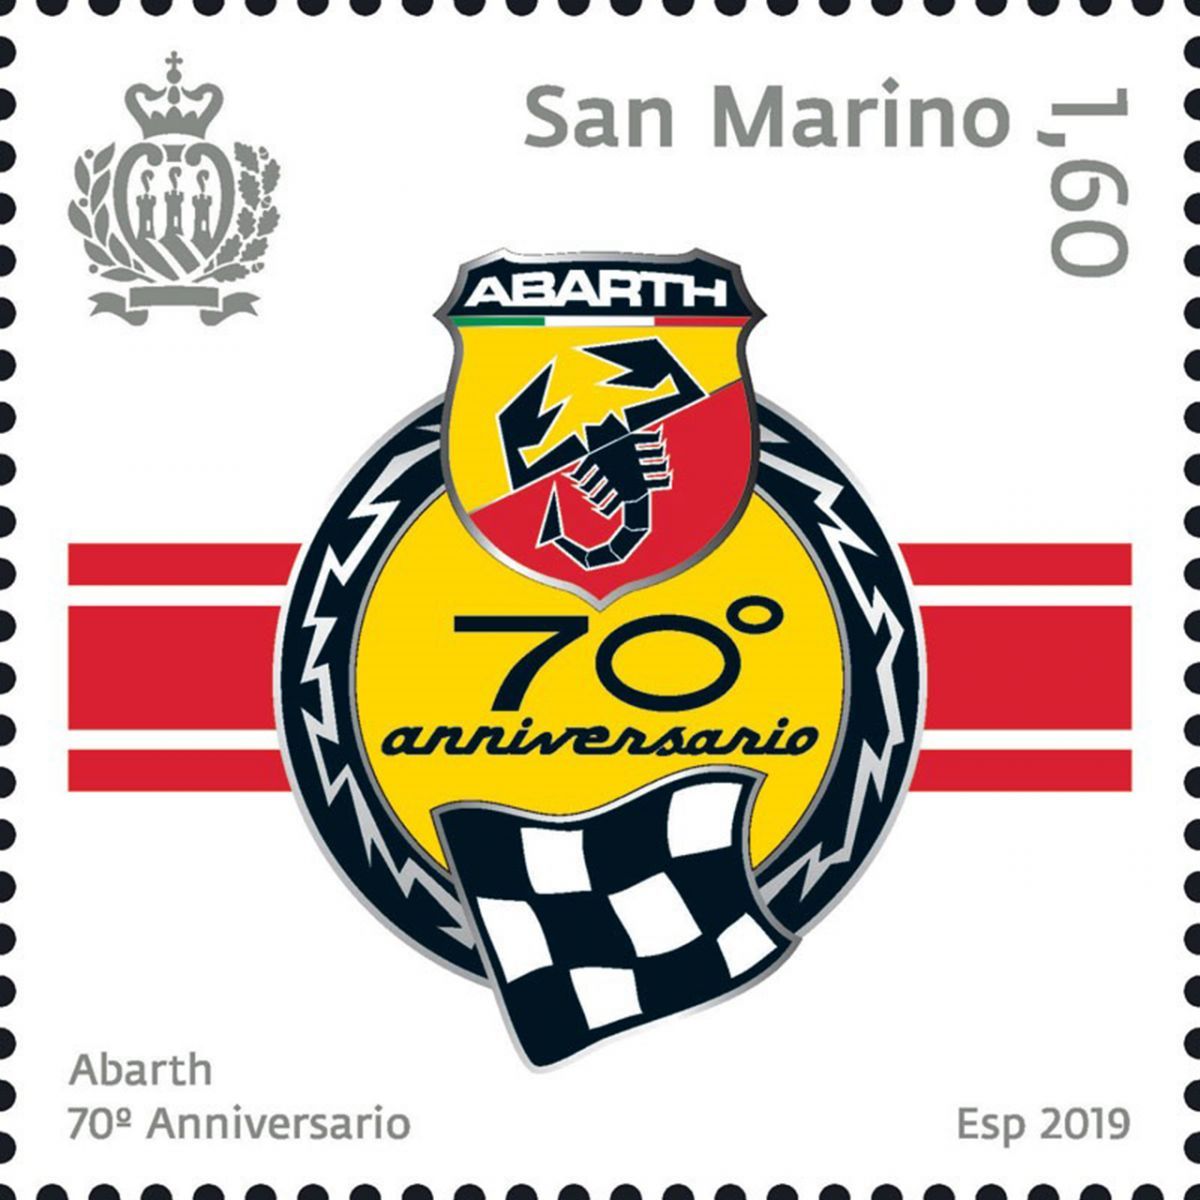 Un francobollo celebrativo per il 70° anniversario dell’Abarth.